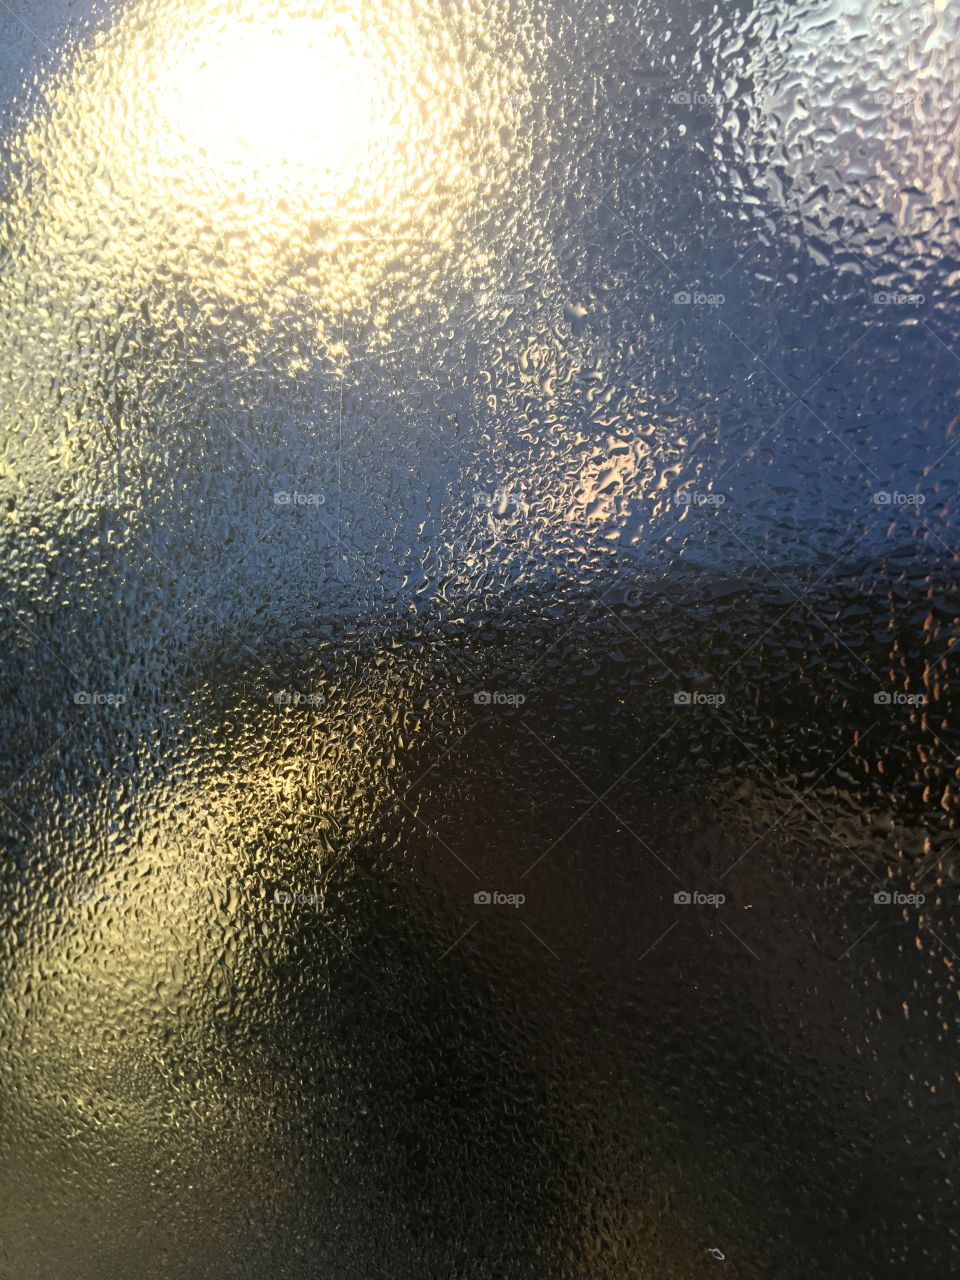 Dew outside a cat window